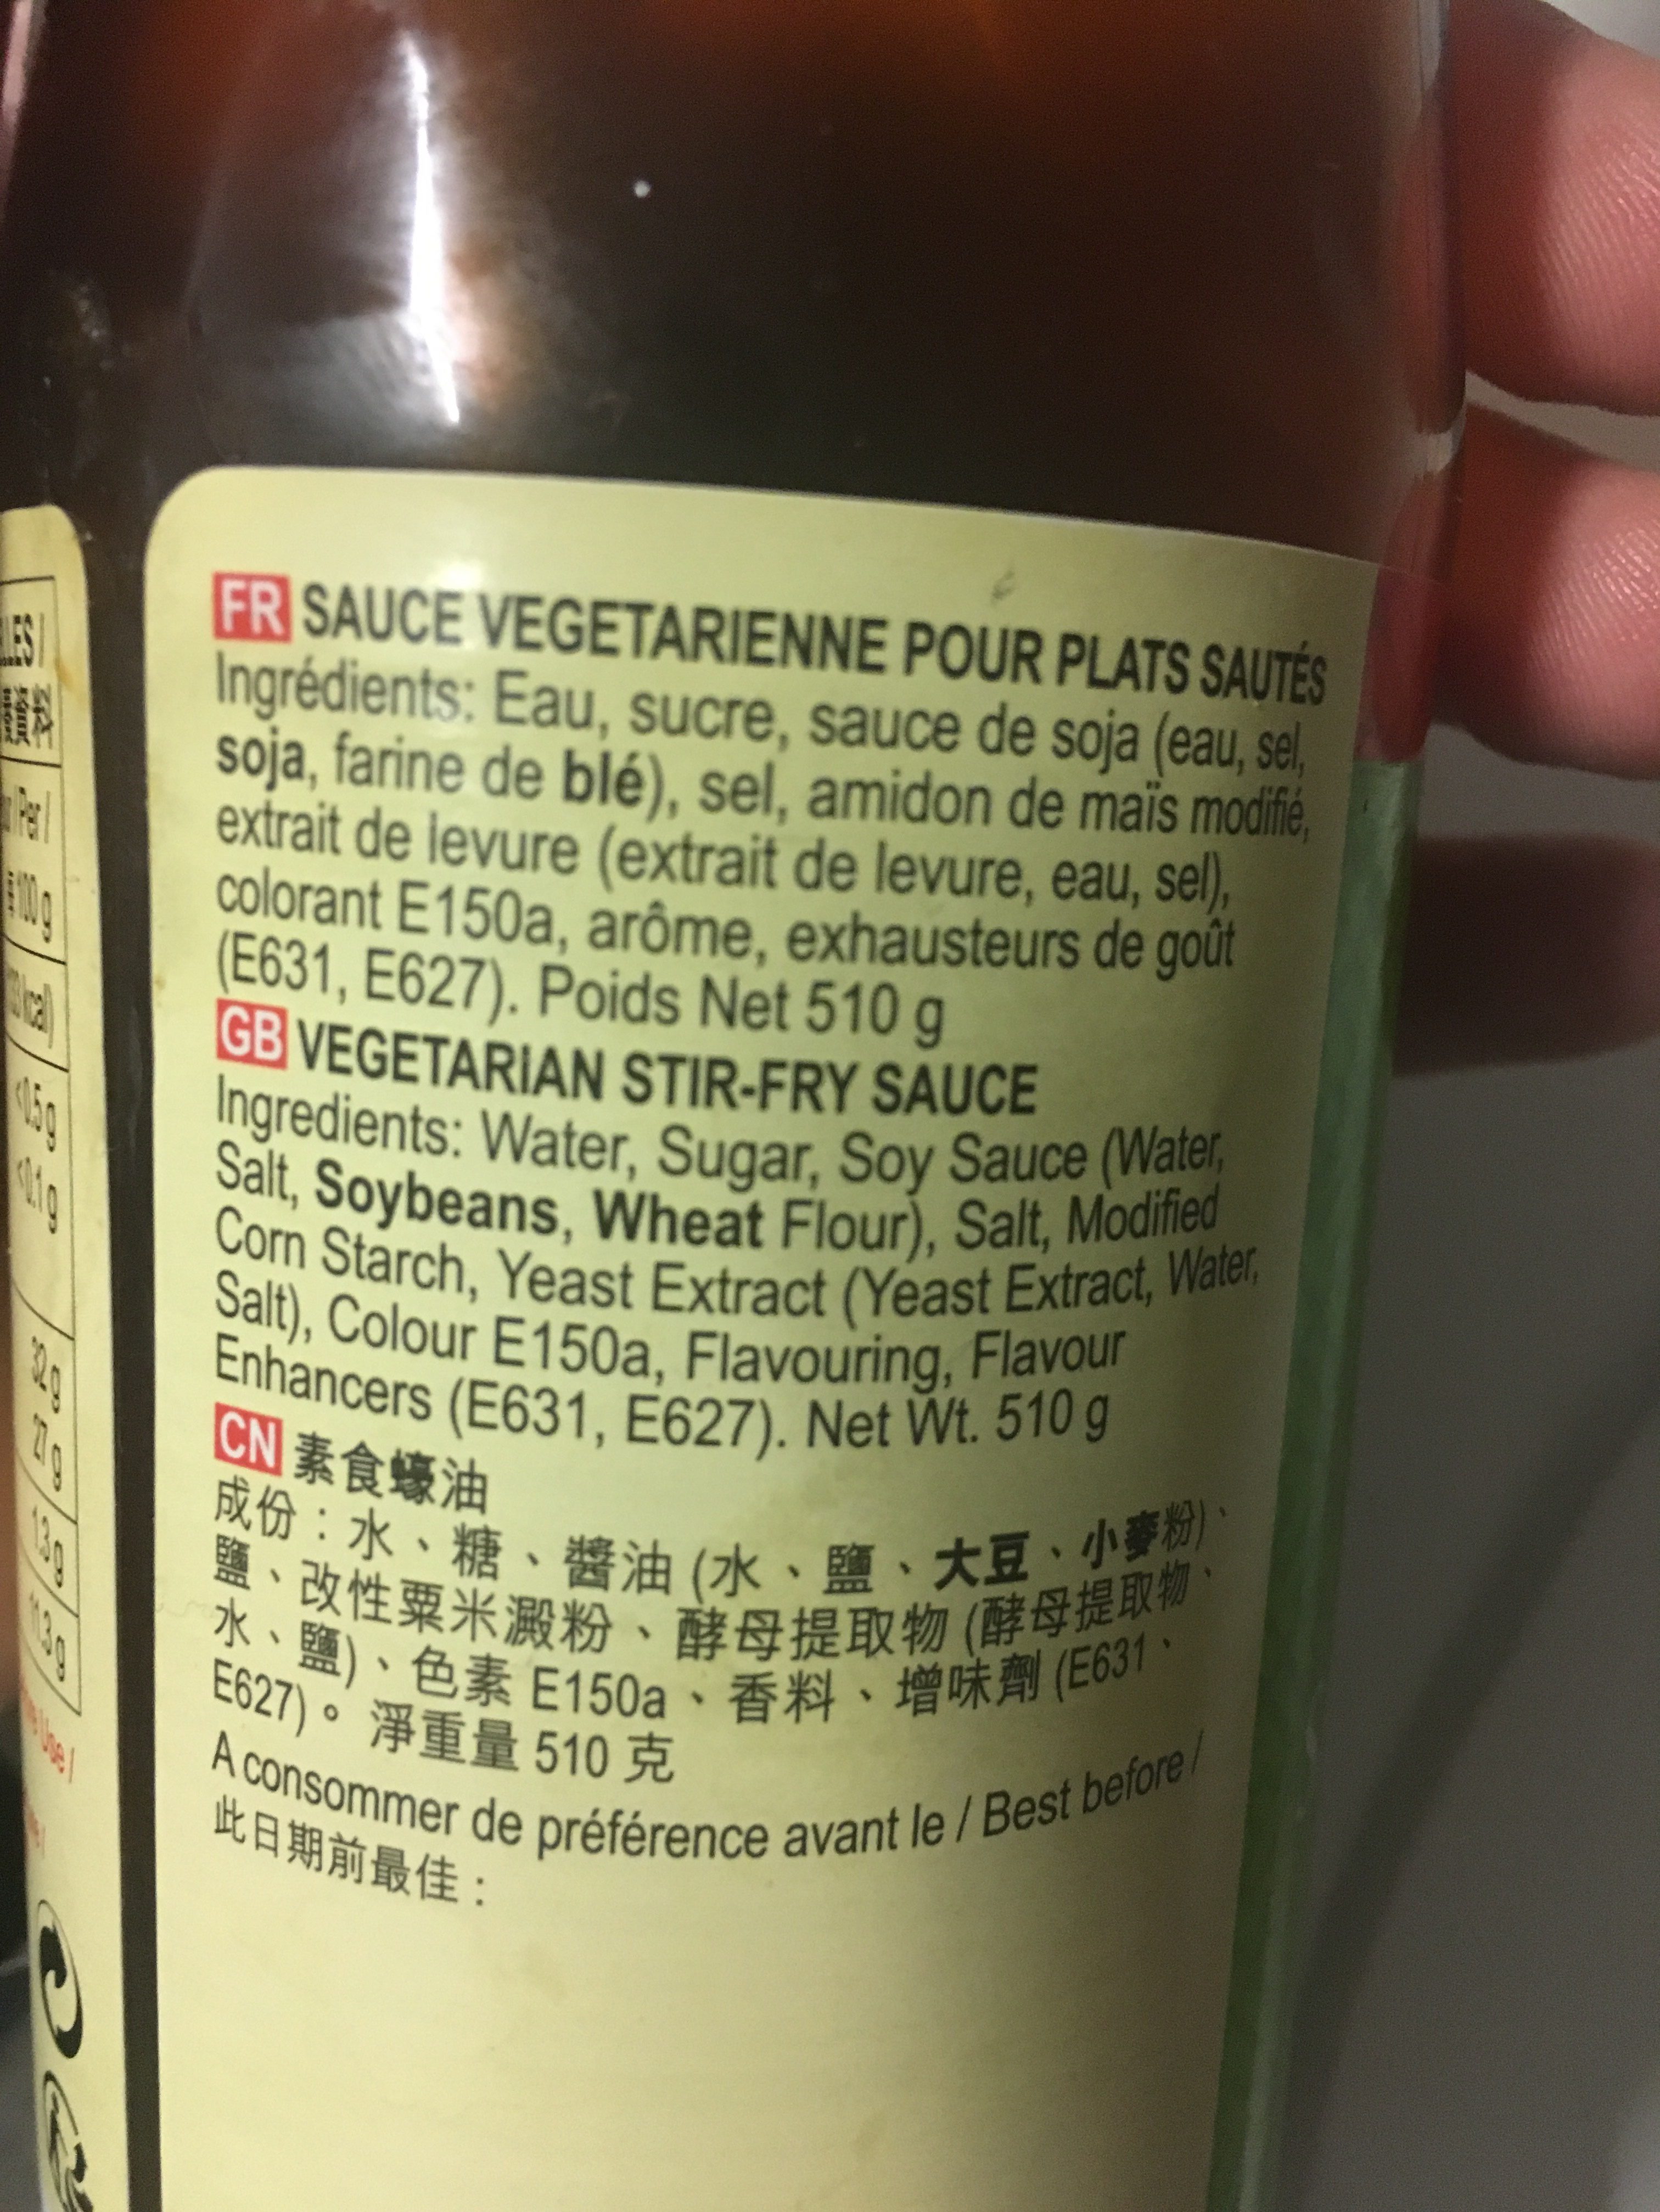 Lkk Vegetarian stirfry sauce - Ingredients